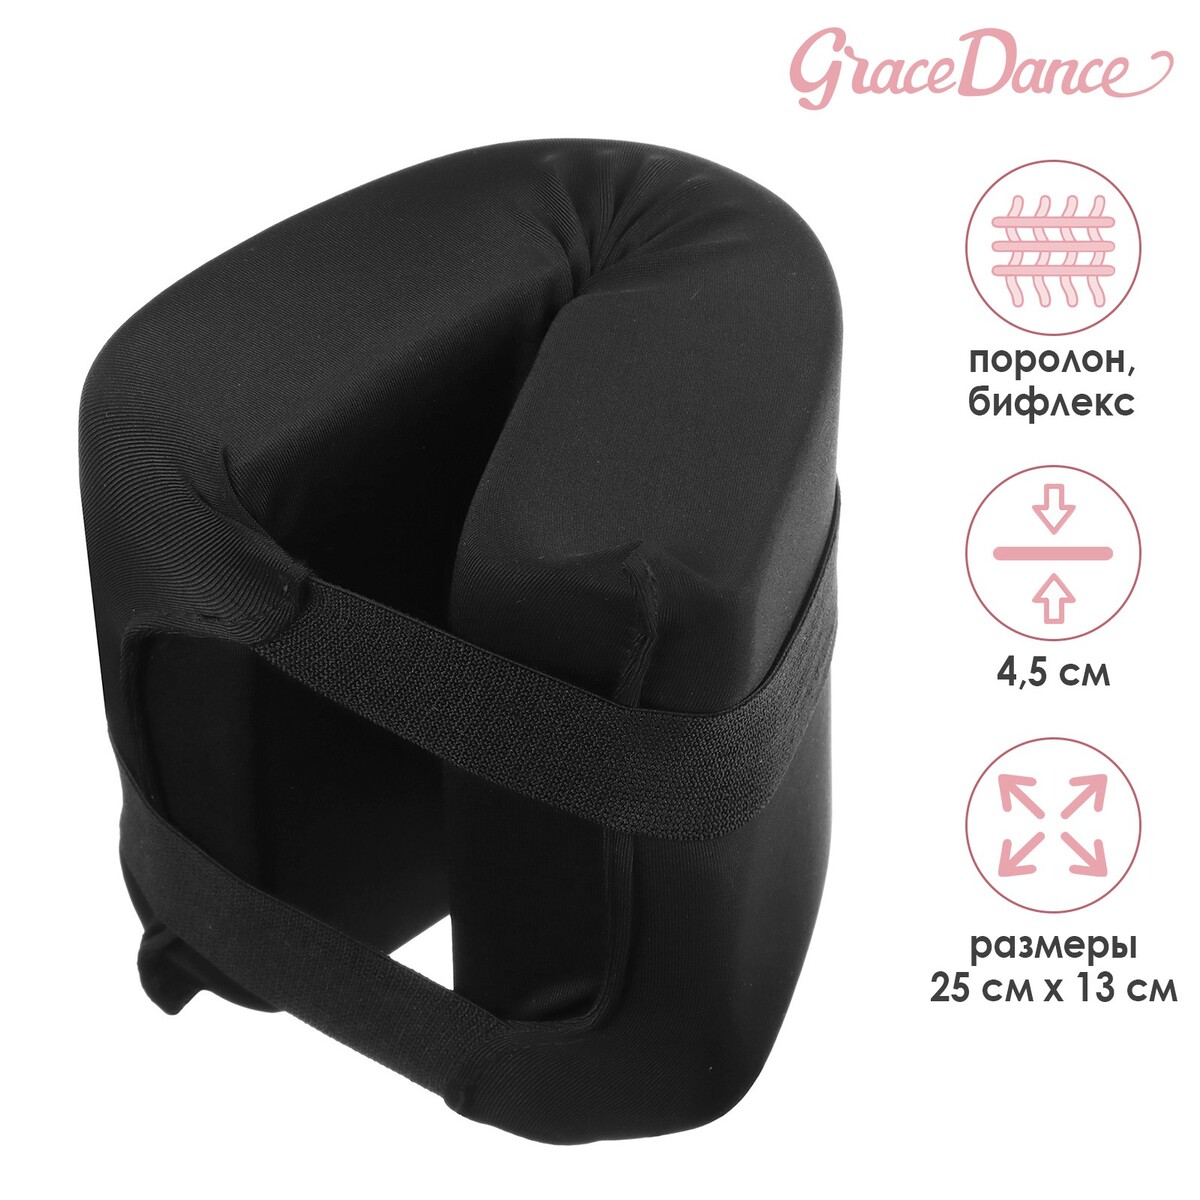 Подушка для растяжки grace dance, цвет черный подушка для растяжки grace dance